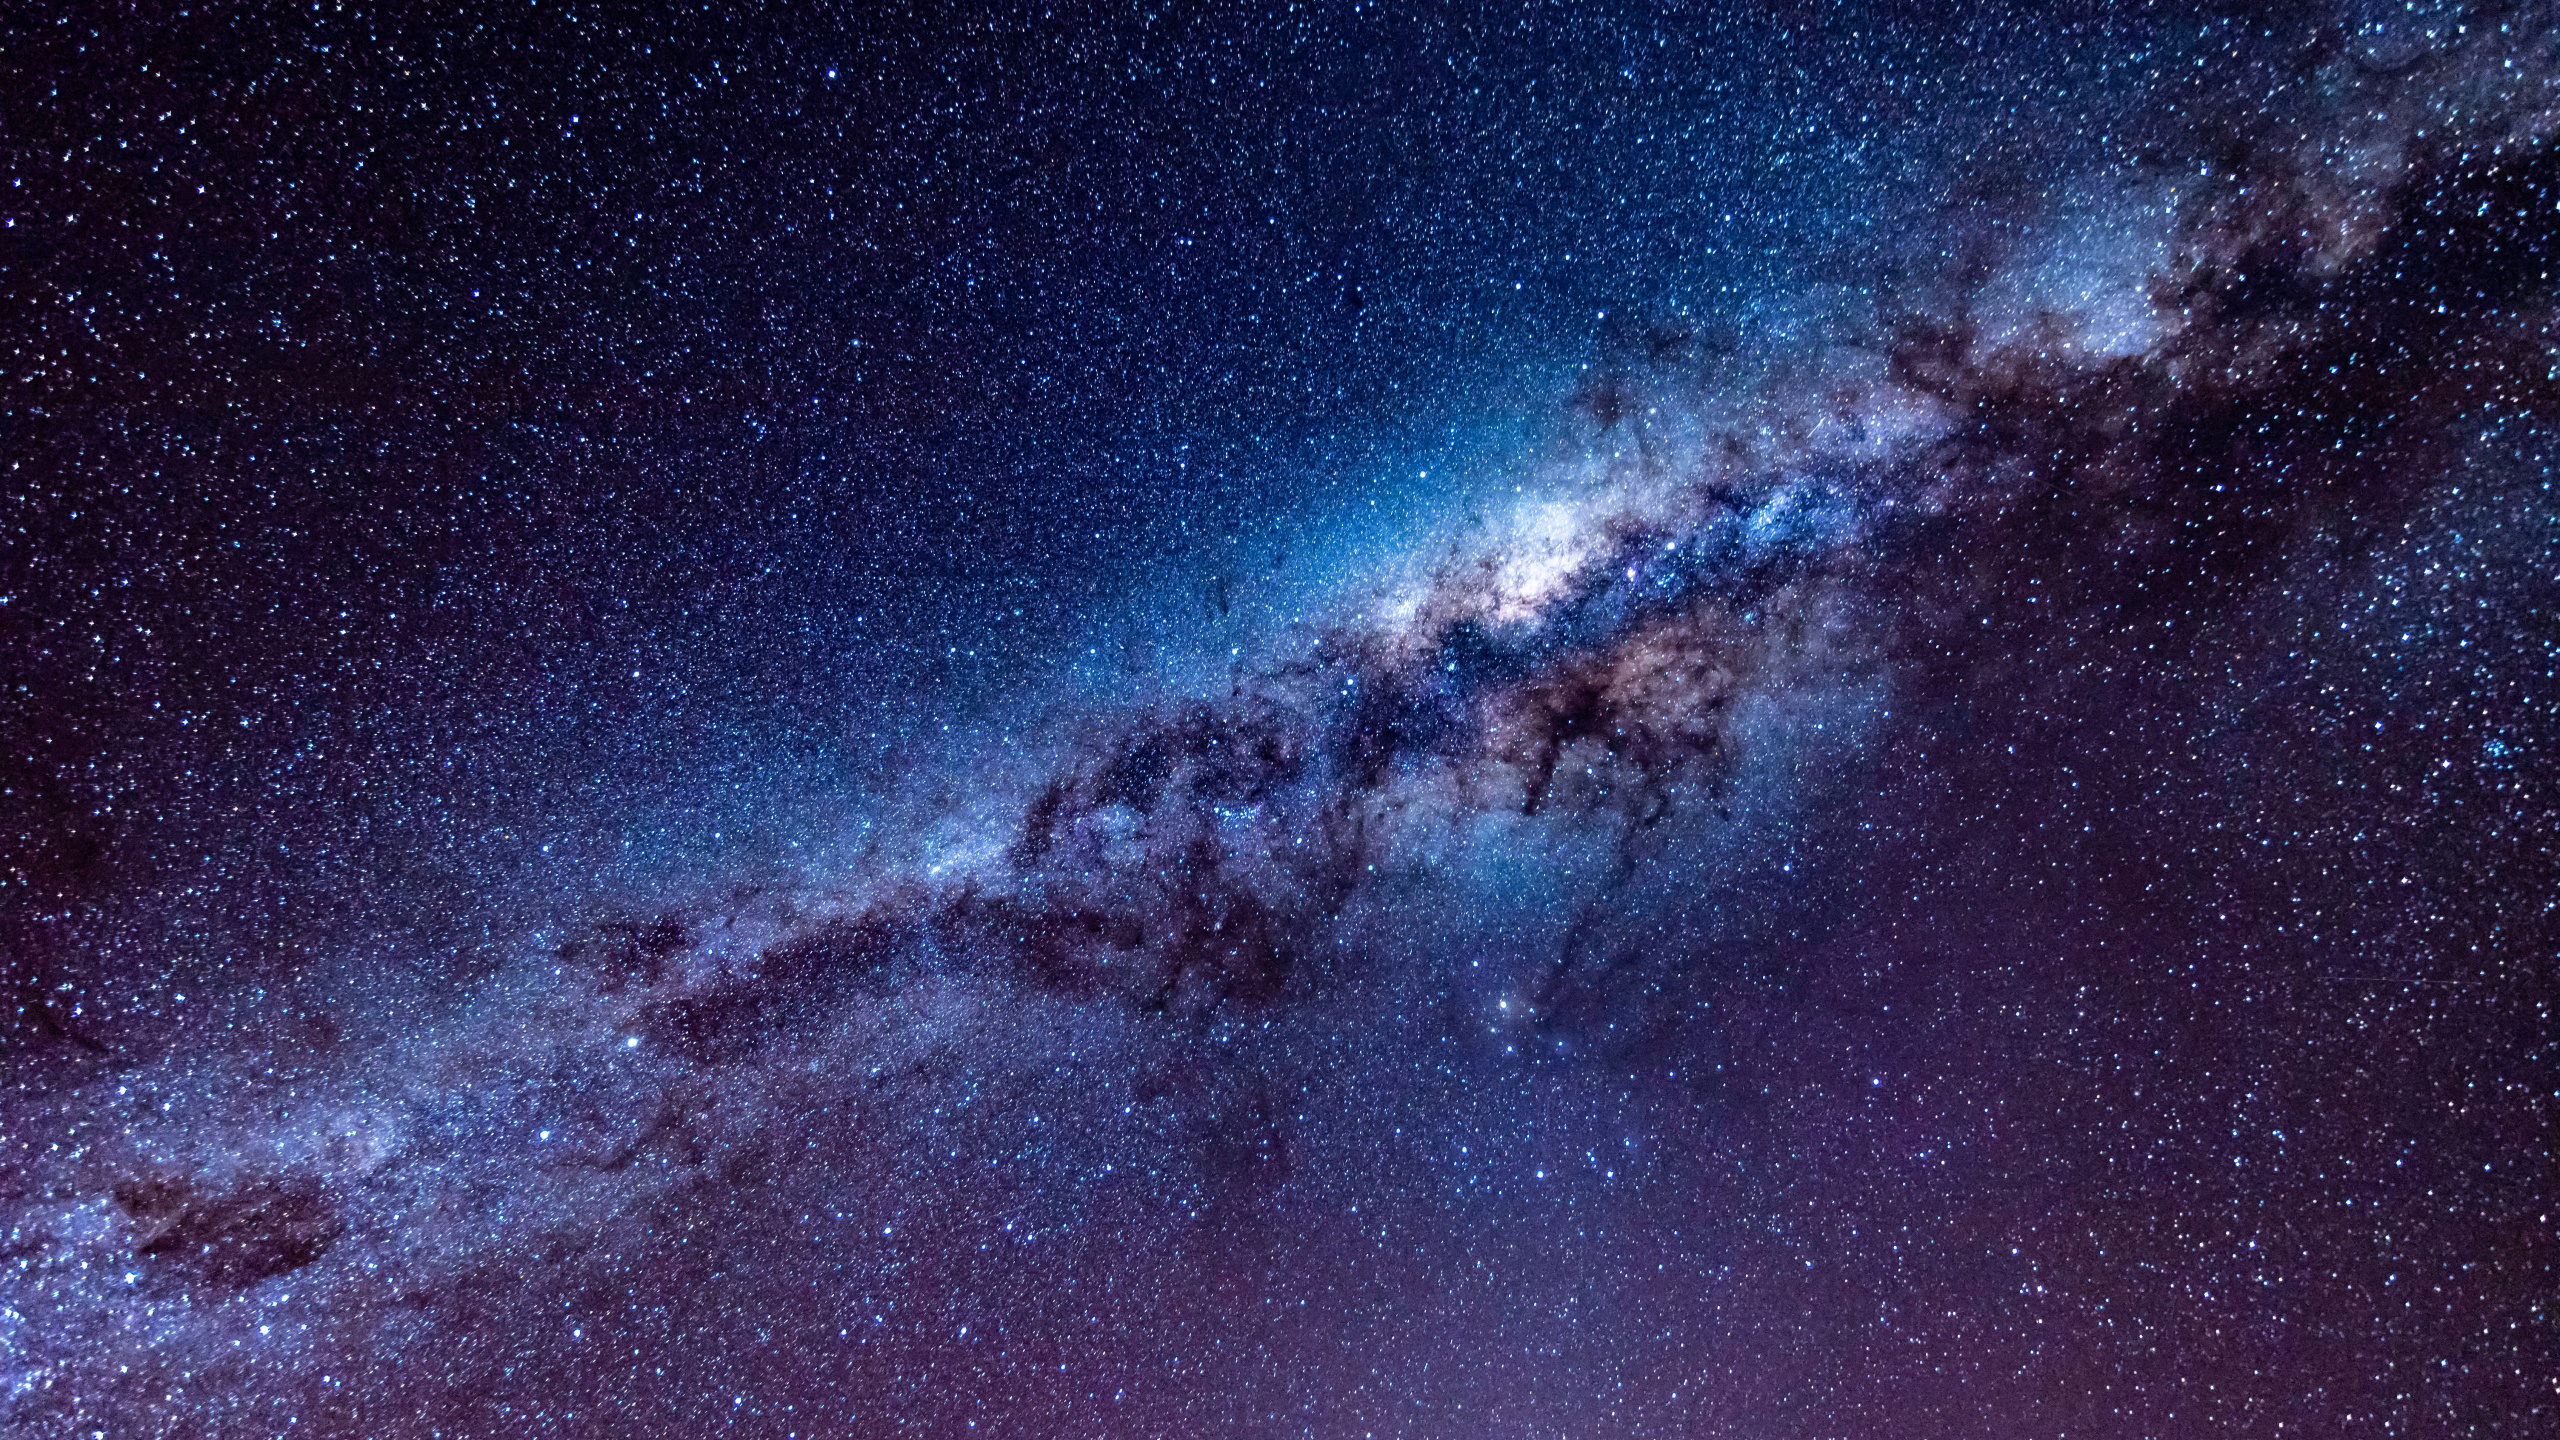 银河系, 天文学, 宇宙, 明星, 夜晚的天空 壁纸 2560x1440 允许